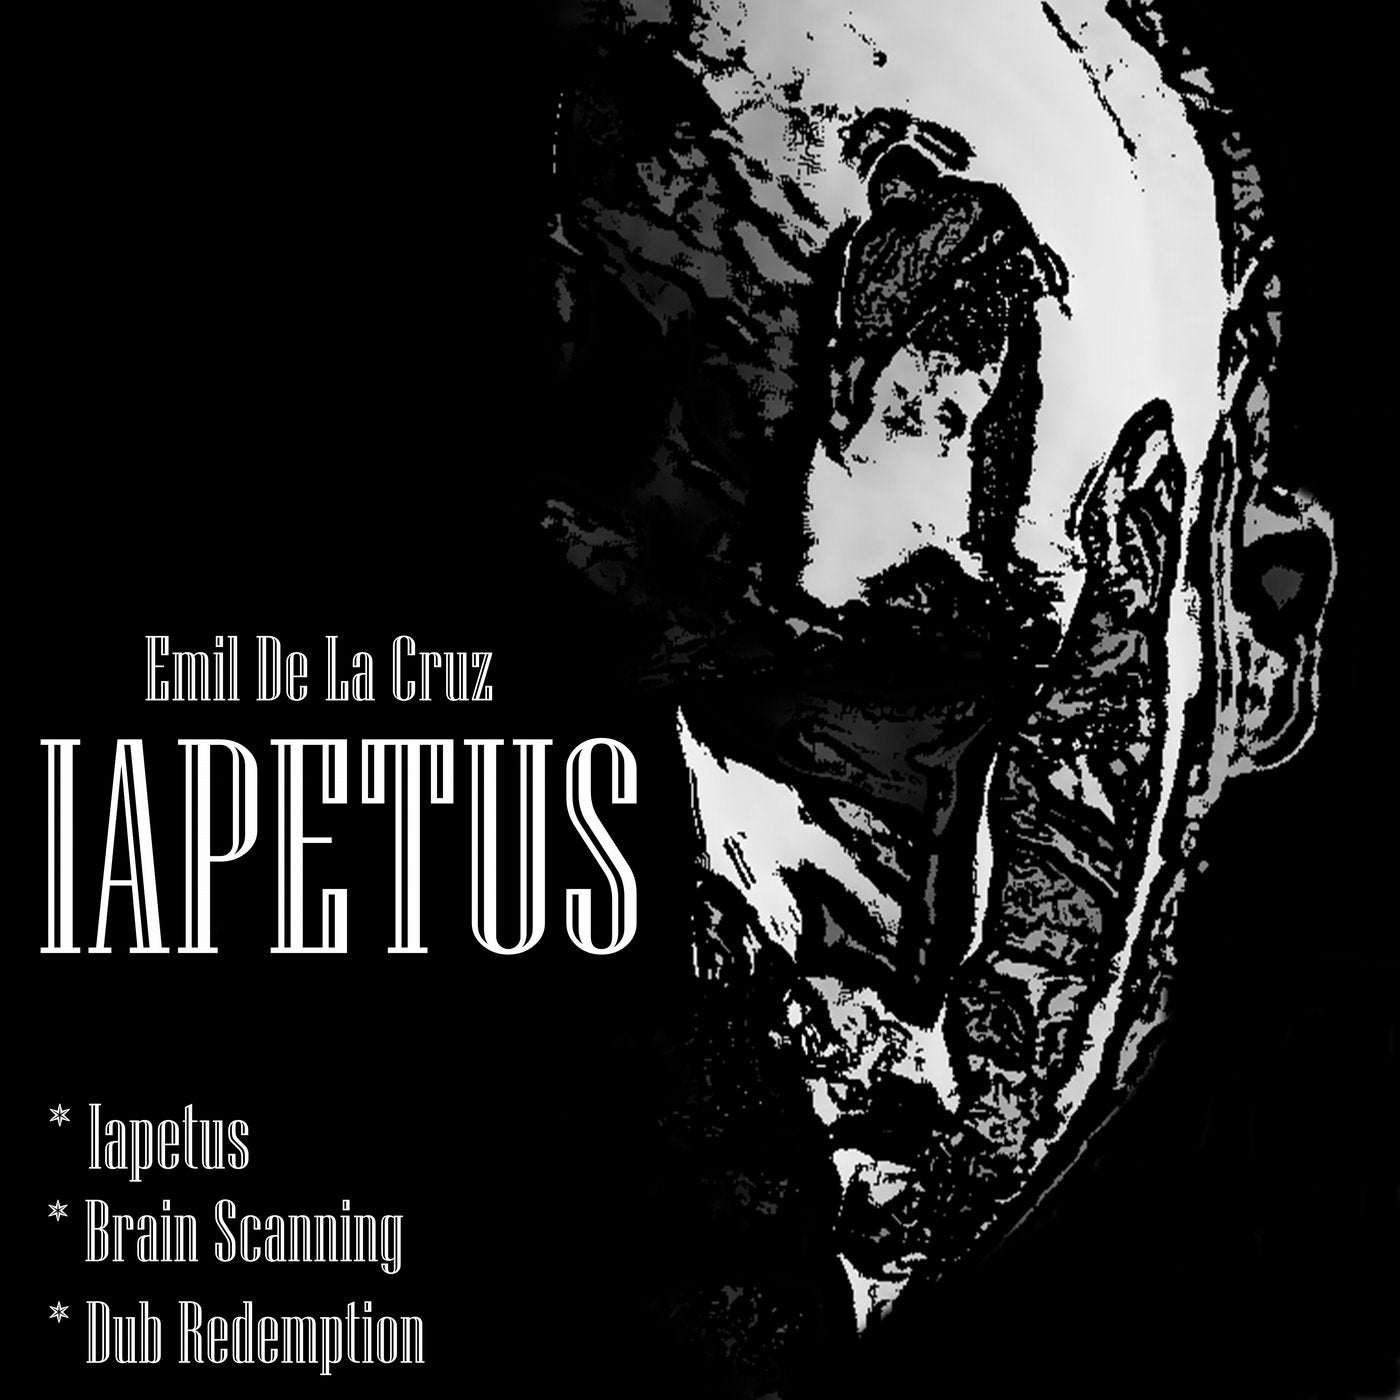 Iapetus